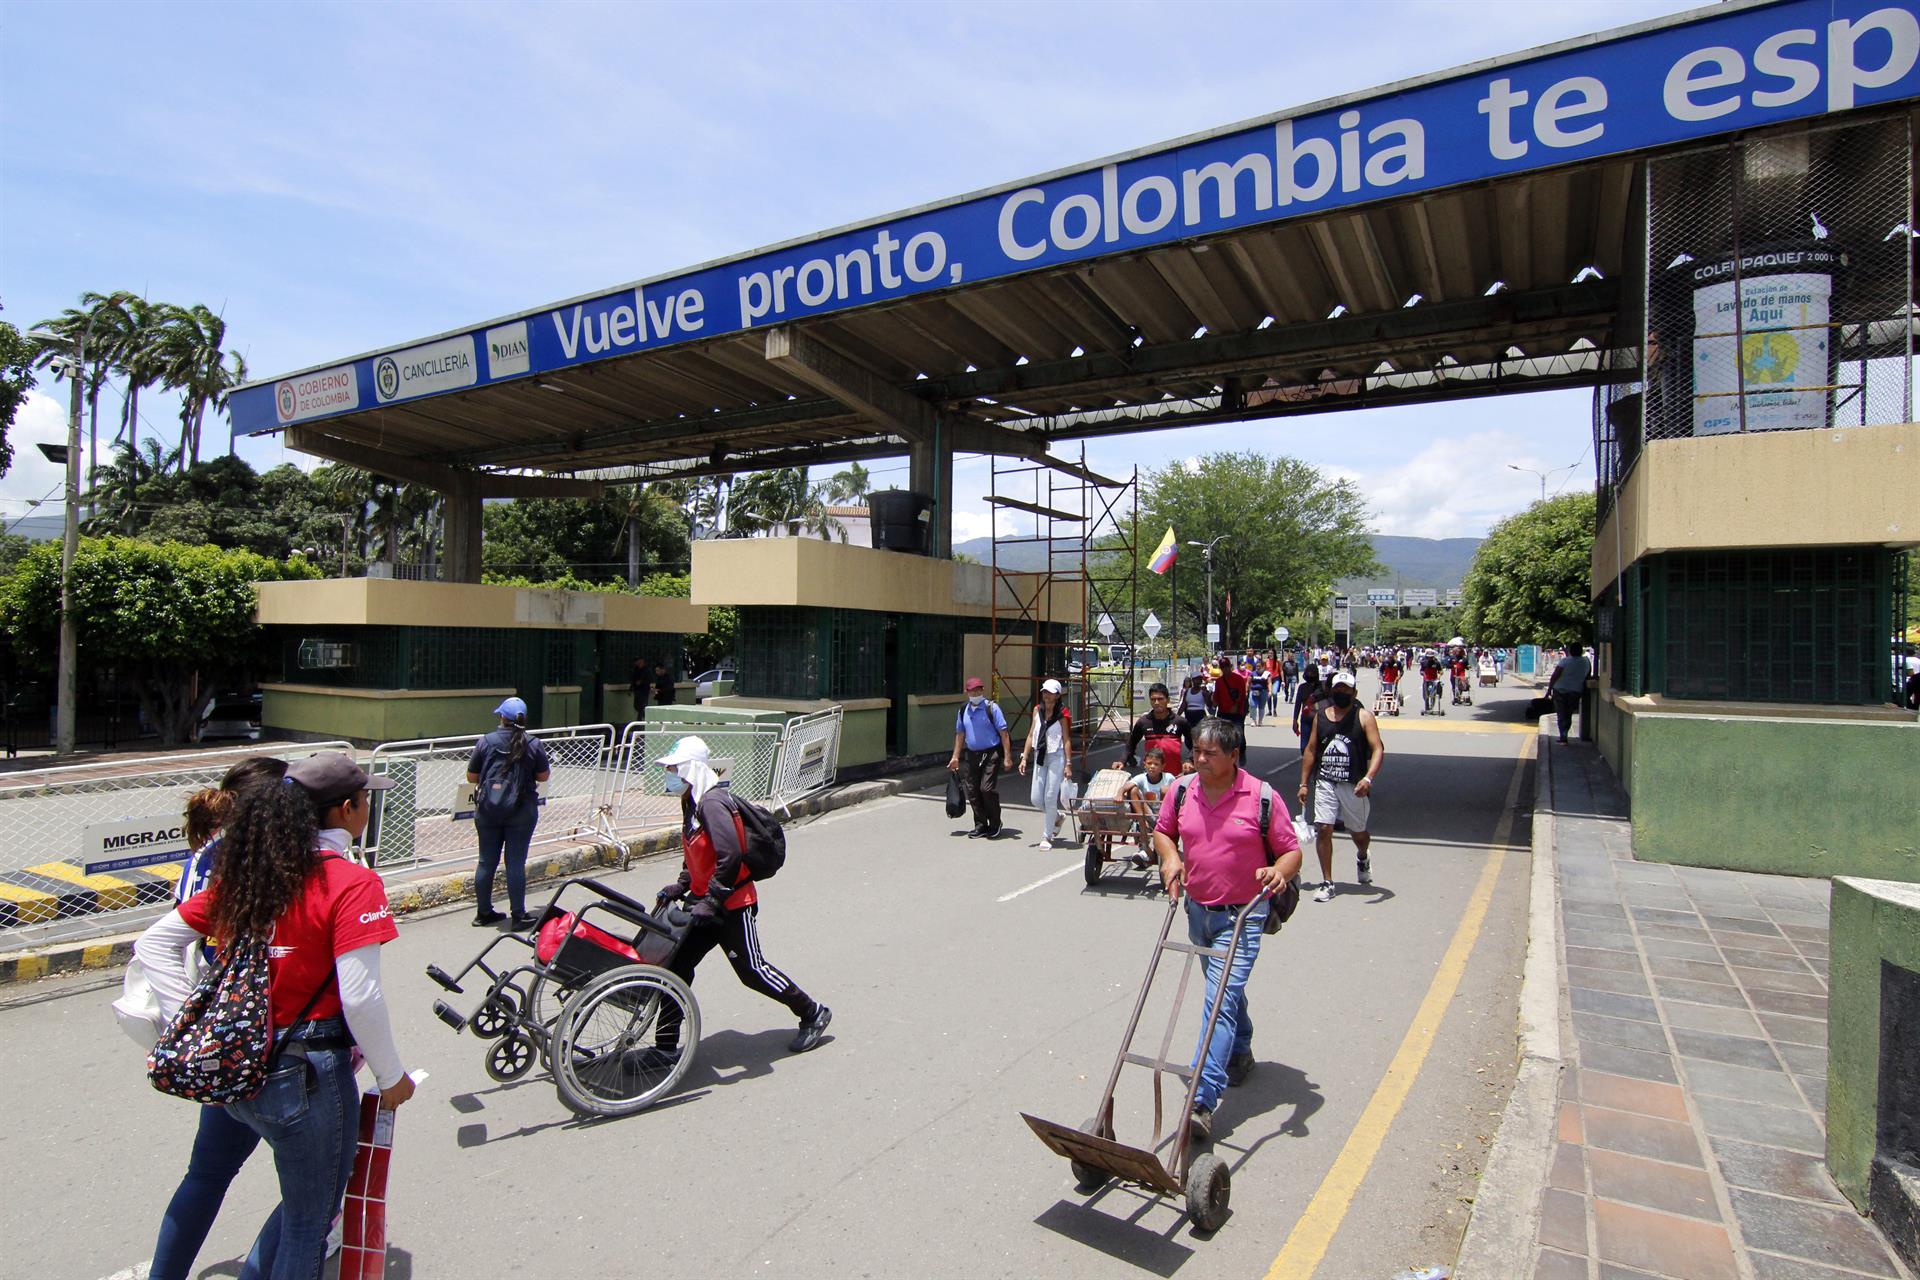 Cancelada reunión entre congresistas colombianos y diputados chavistas en la frontera